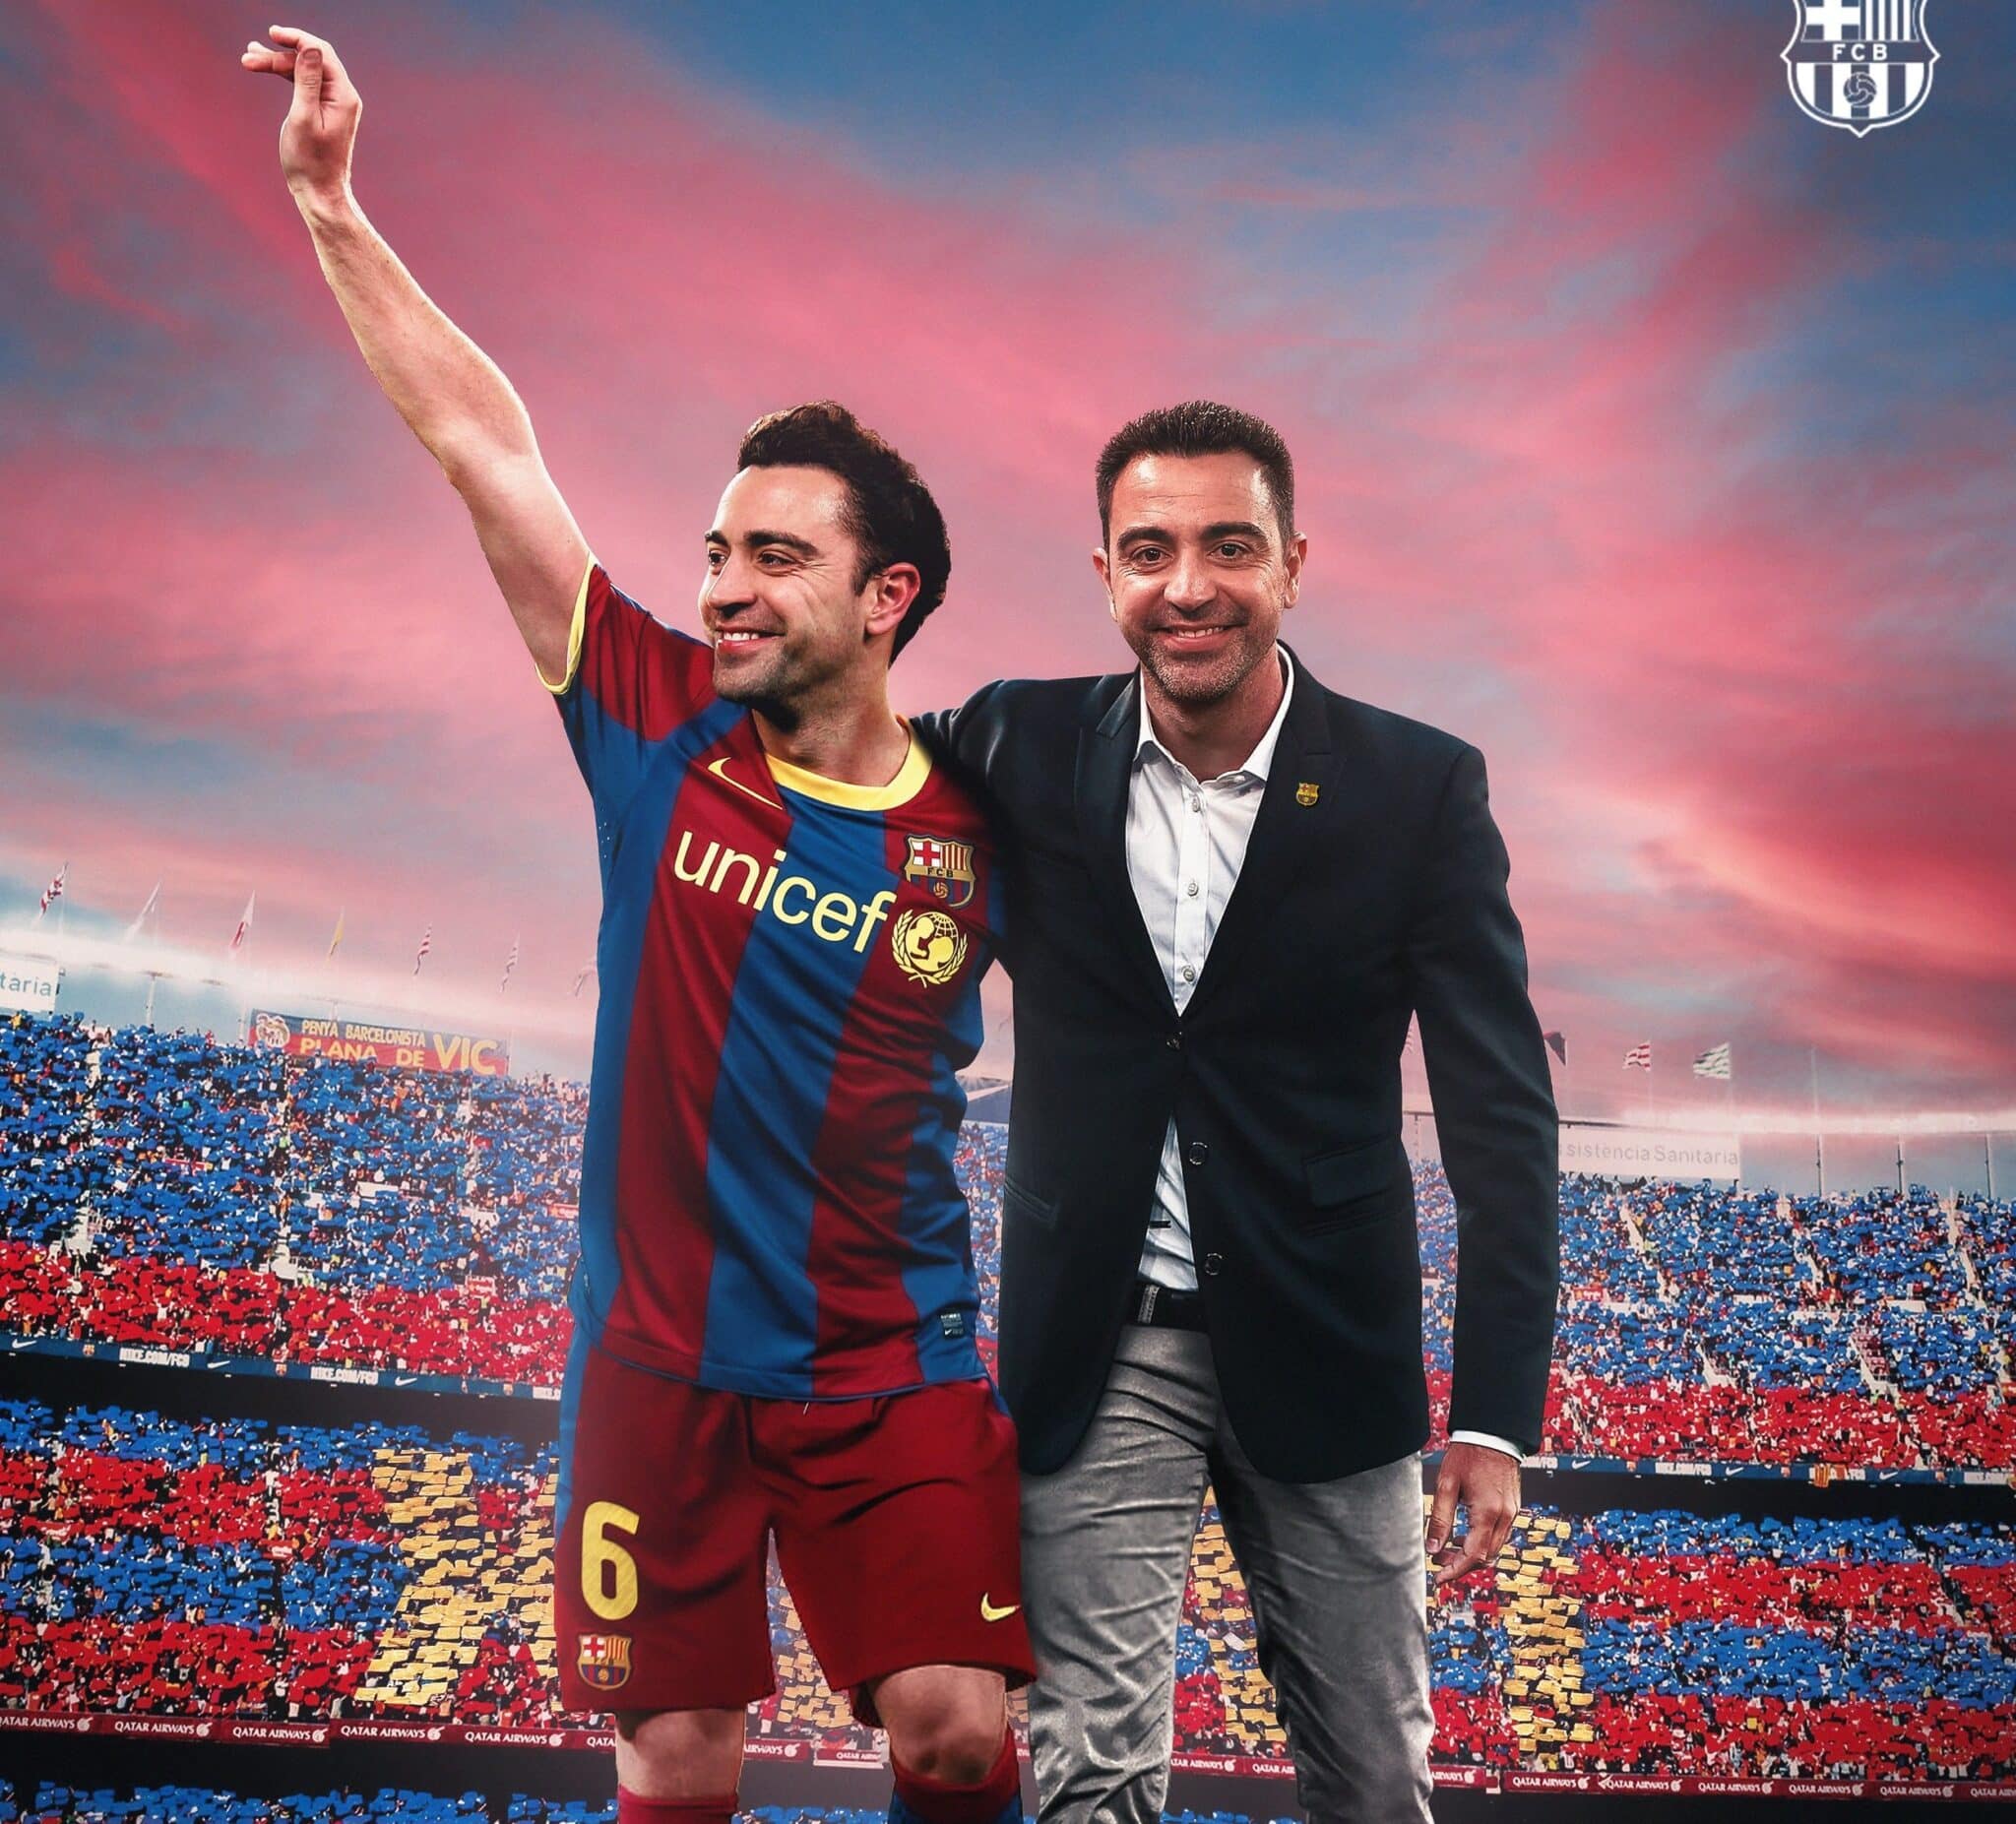 Montaje realizado por el FC Barcelona para dar la bienvenida al nuevo entrenador, Xavi Hernández